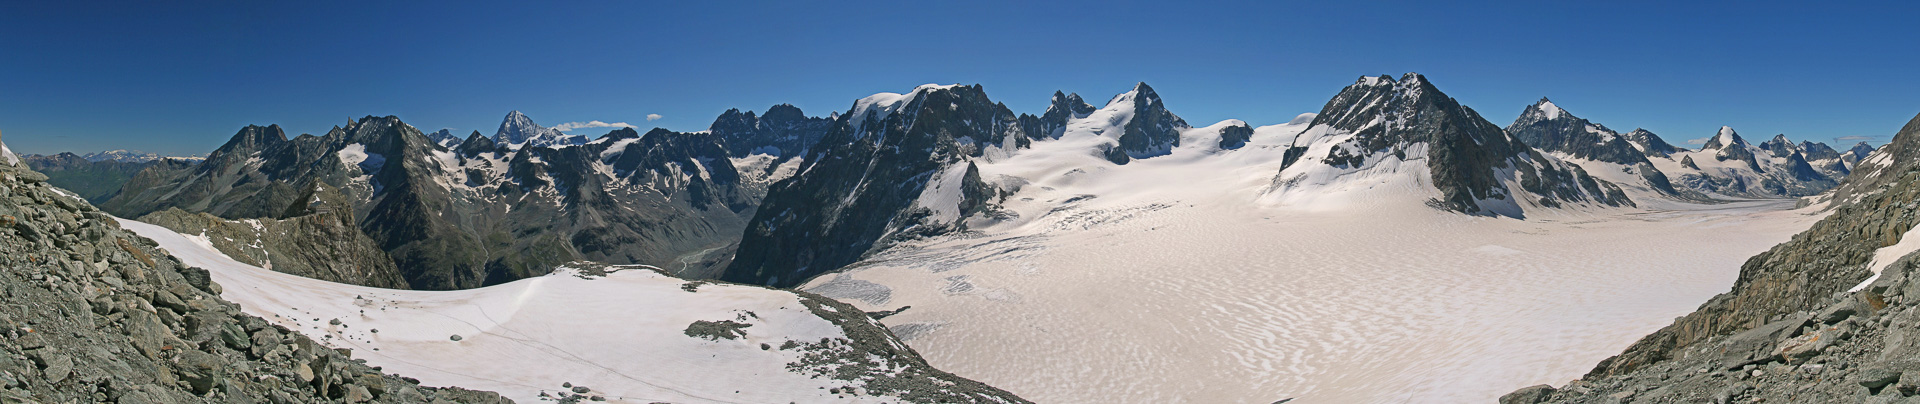 Dent Blanche, Mont Collon und die Eisströme von Glacier du Mont Collon und Glacier d'Otemma.